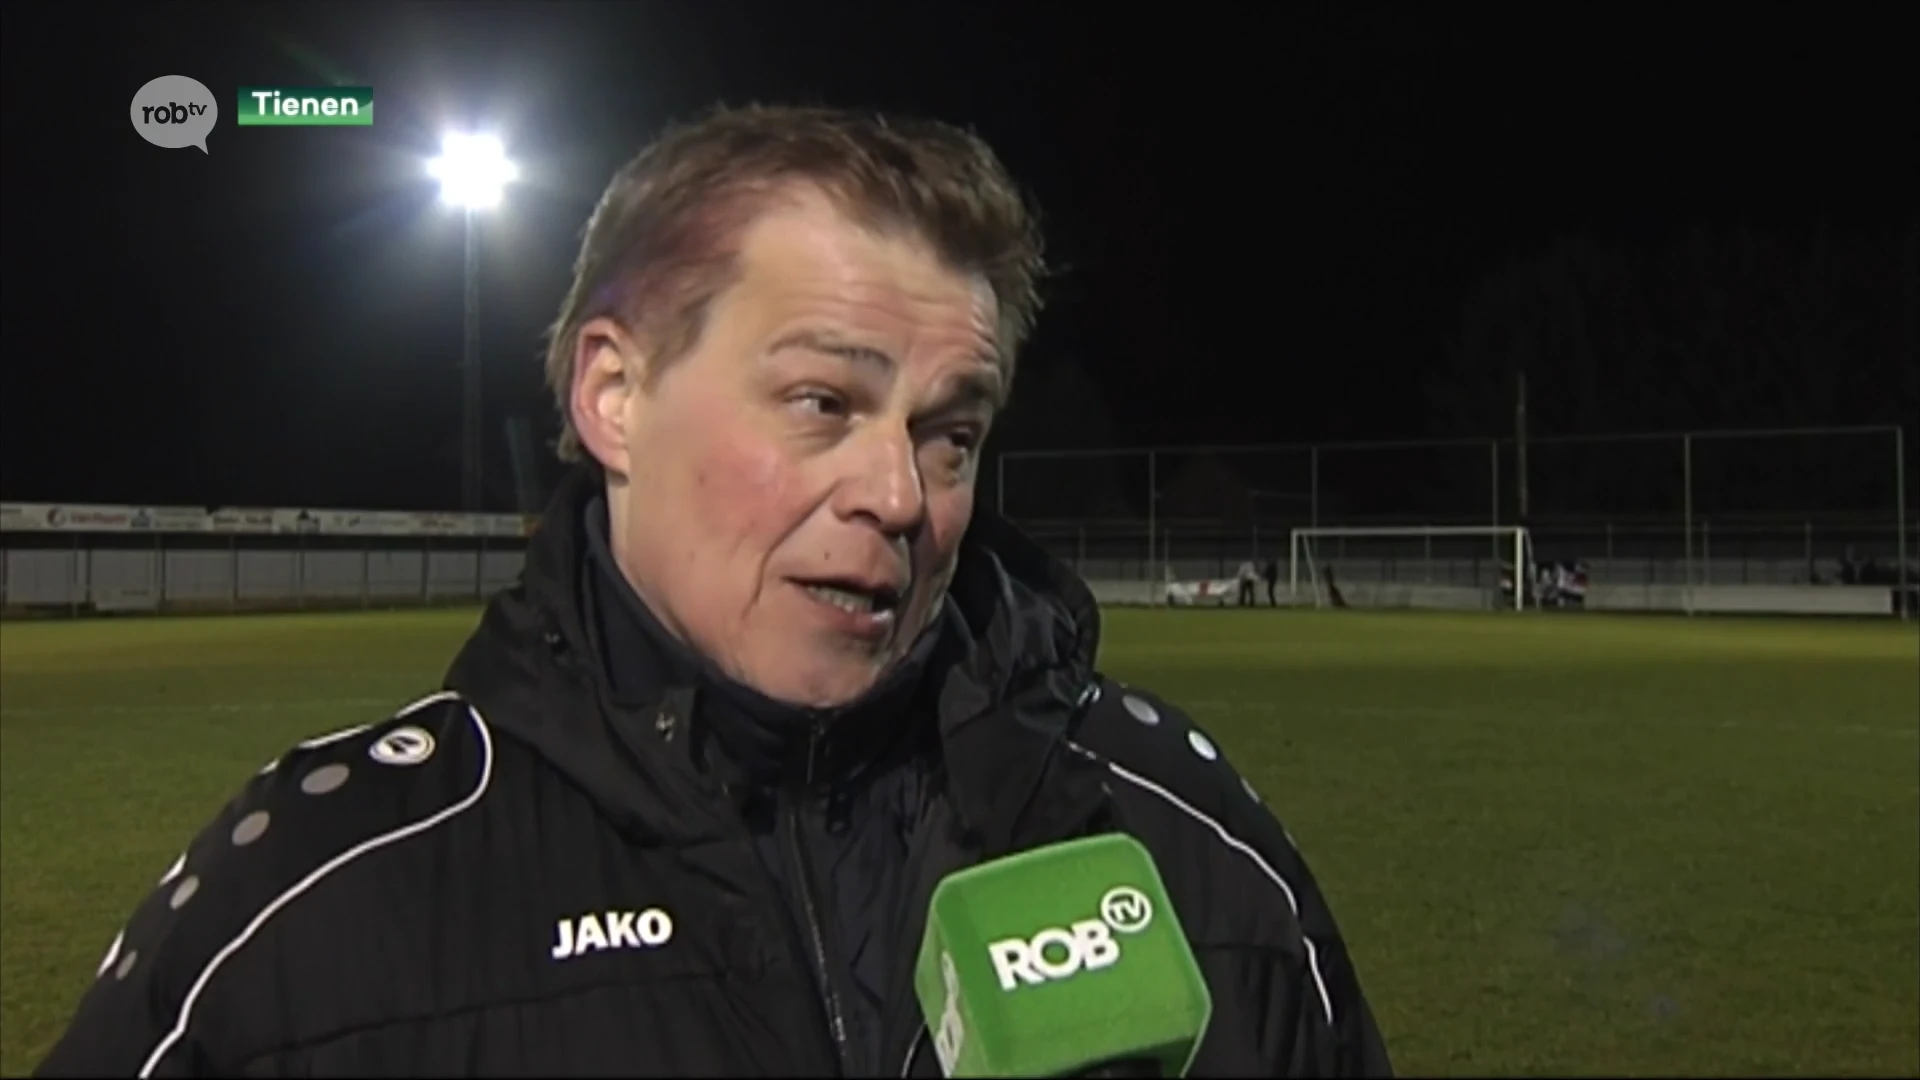 Karel Keleman staat volgend seizoen aan het roer bij KVK Tienen, trainer heeft verleden bij onder meer Betekom